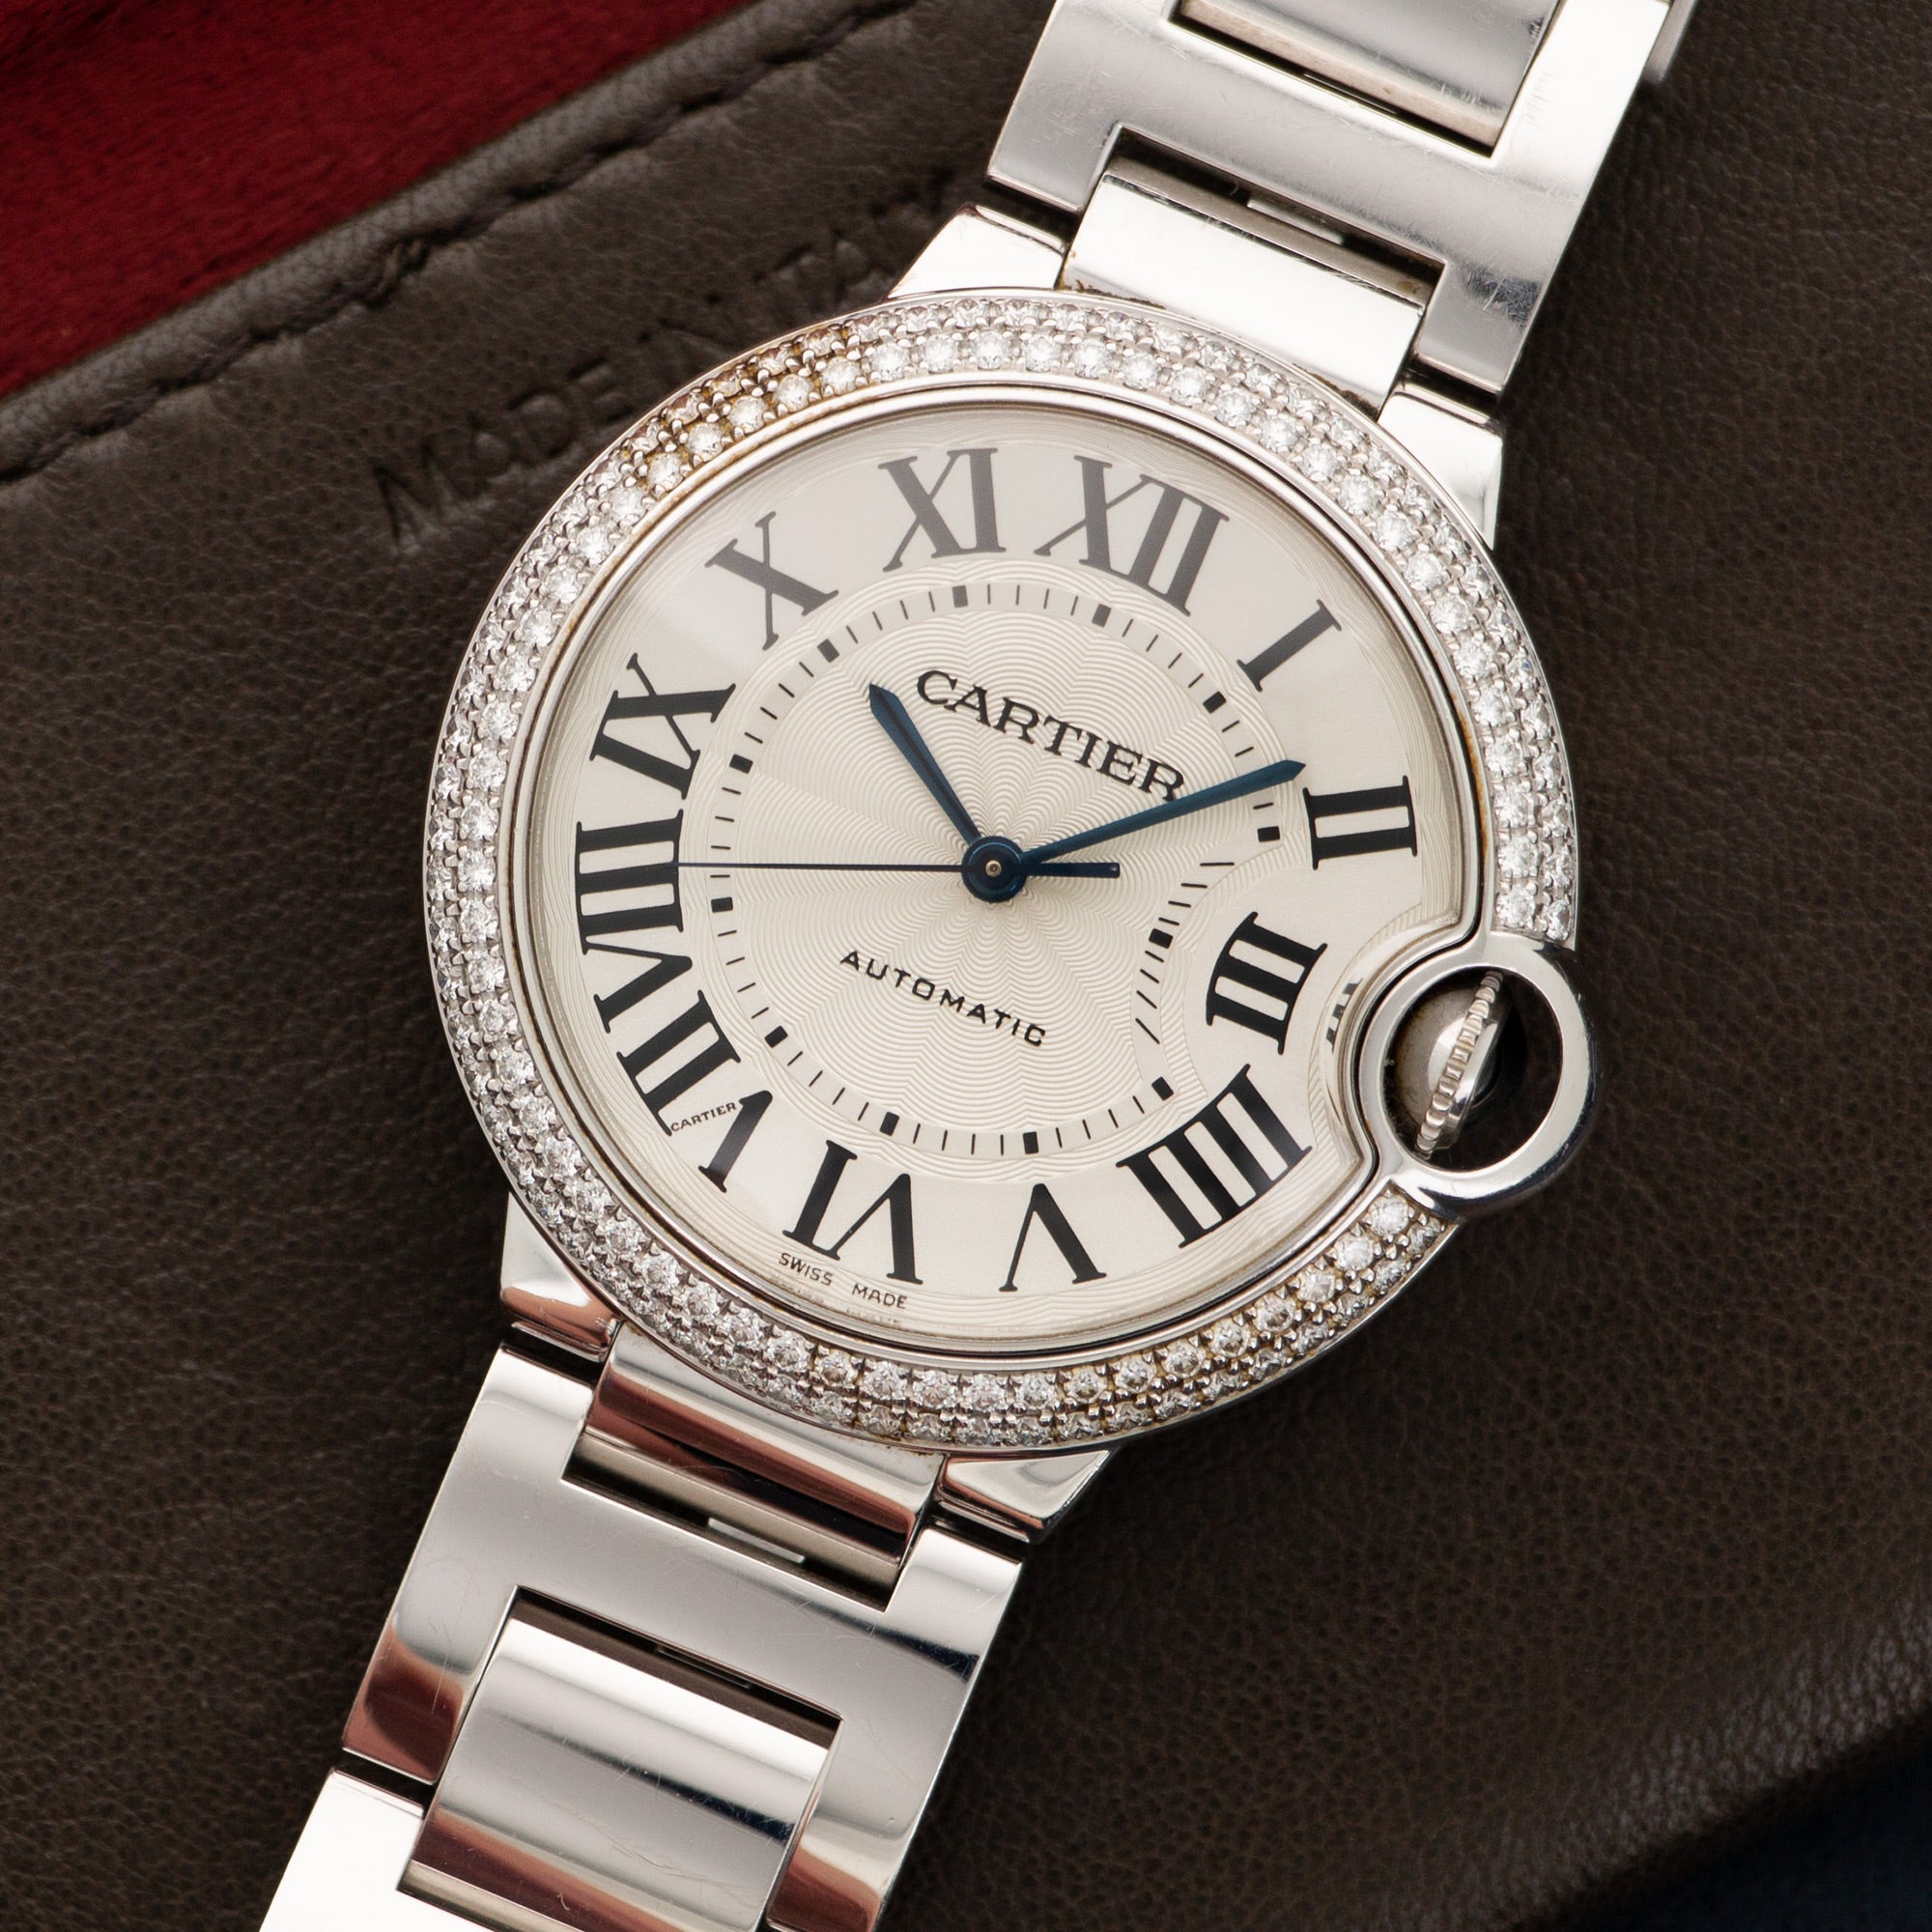 Cartier - Cartier White Gold Ballon Bleu Diamond Watch - The Keystone Watches